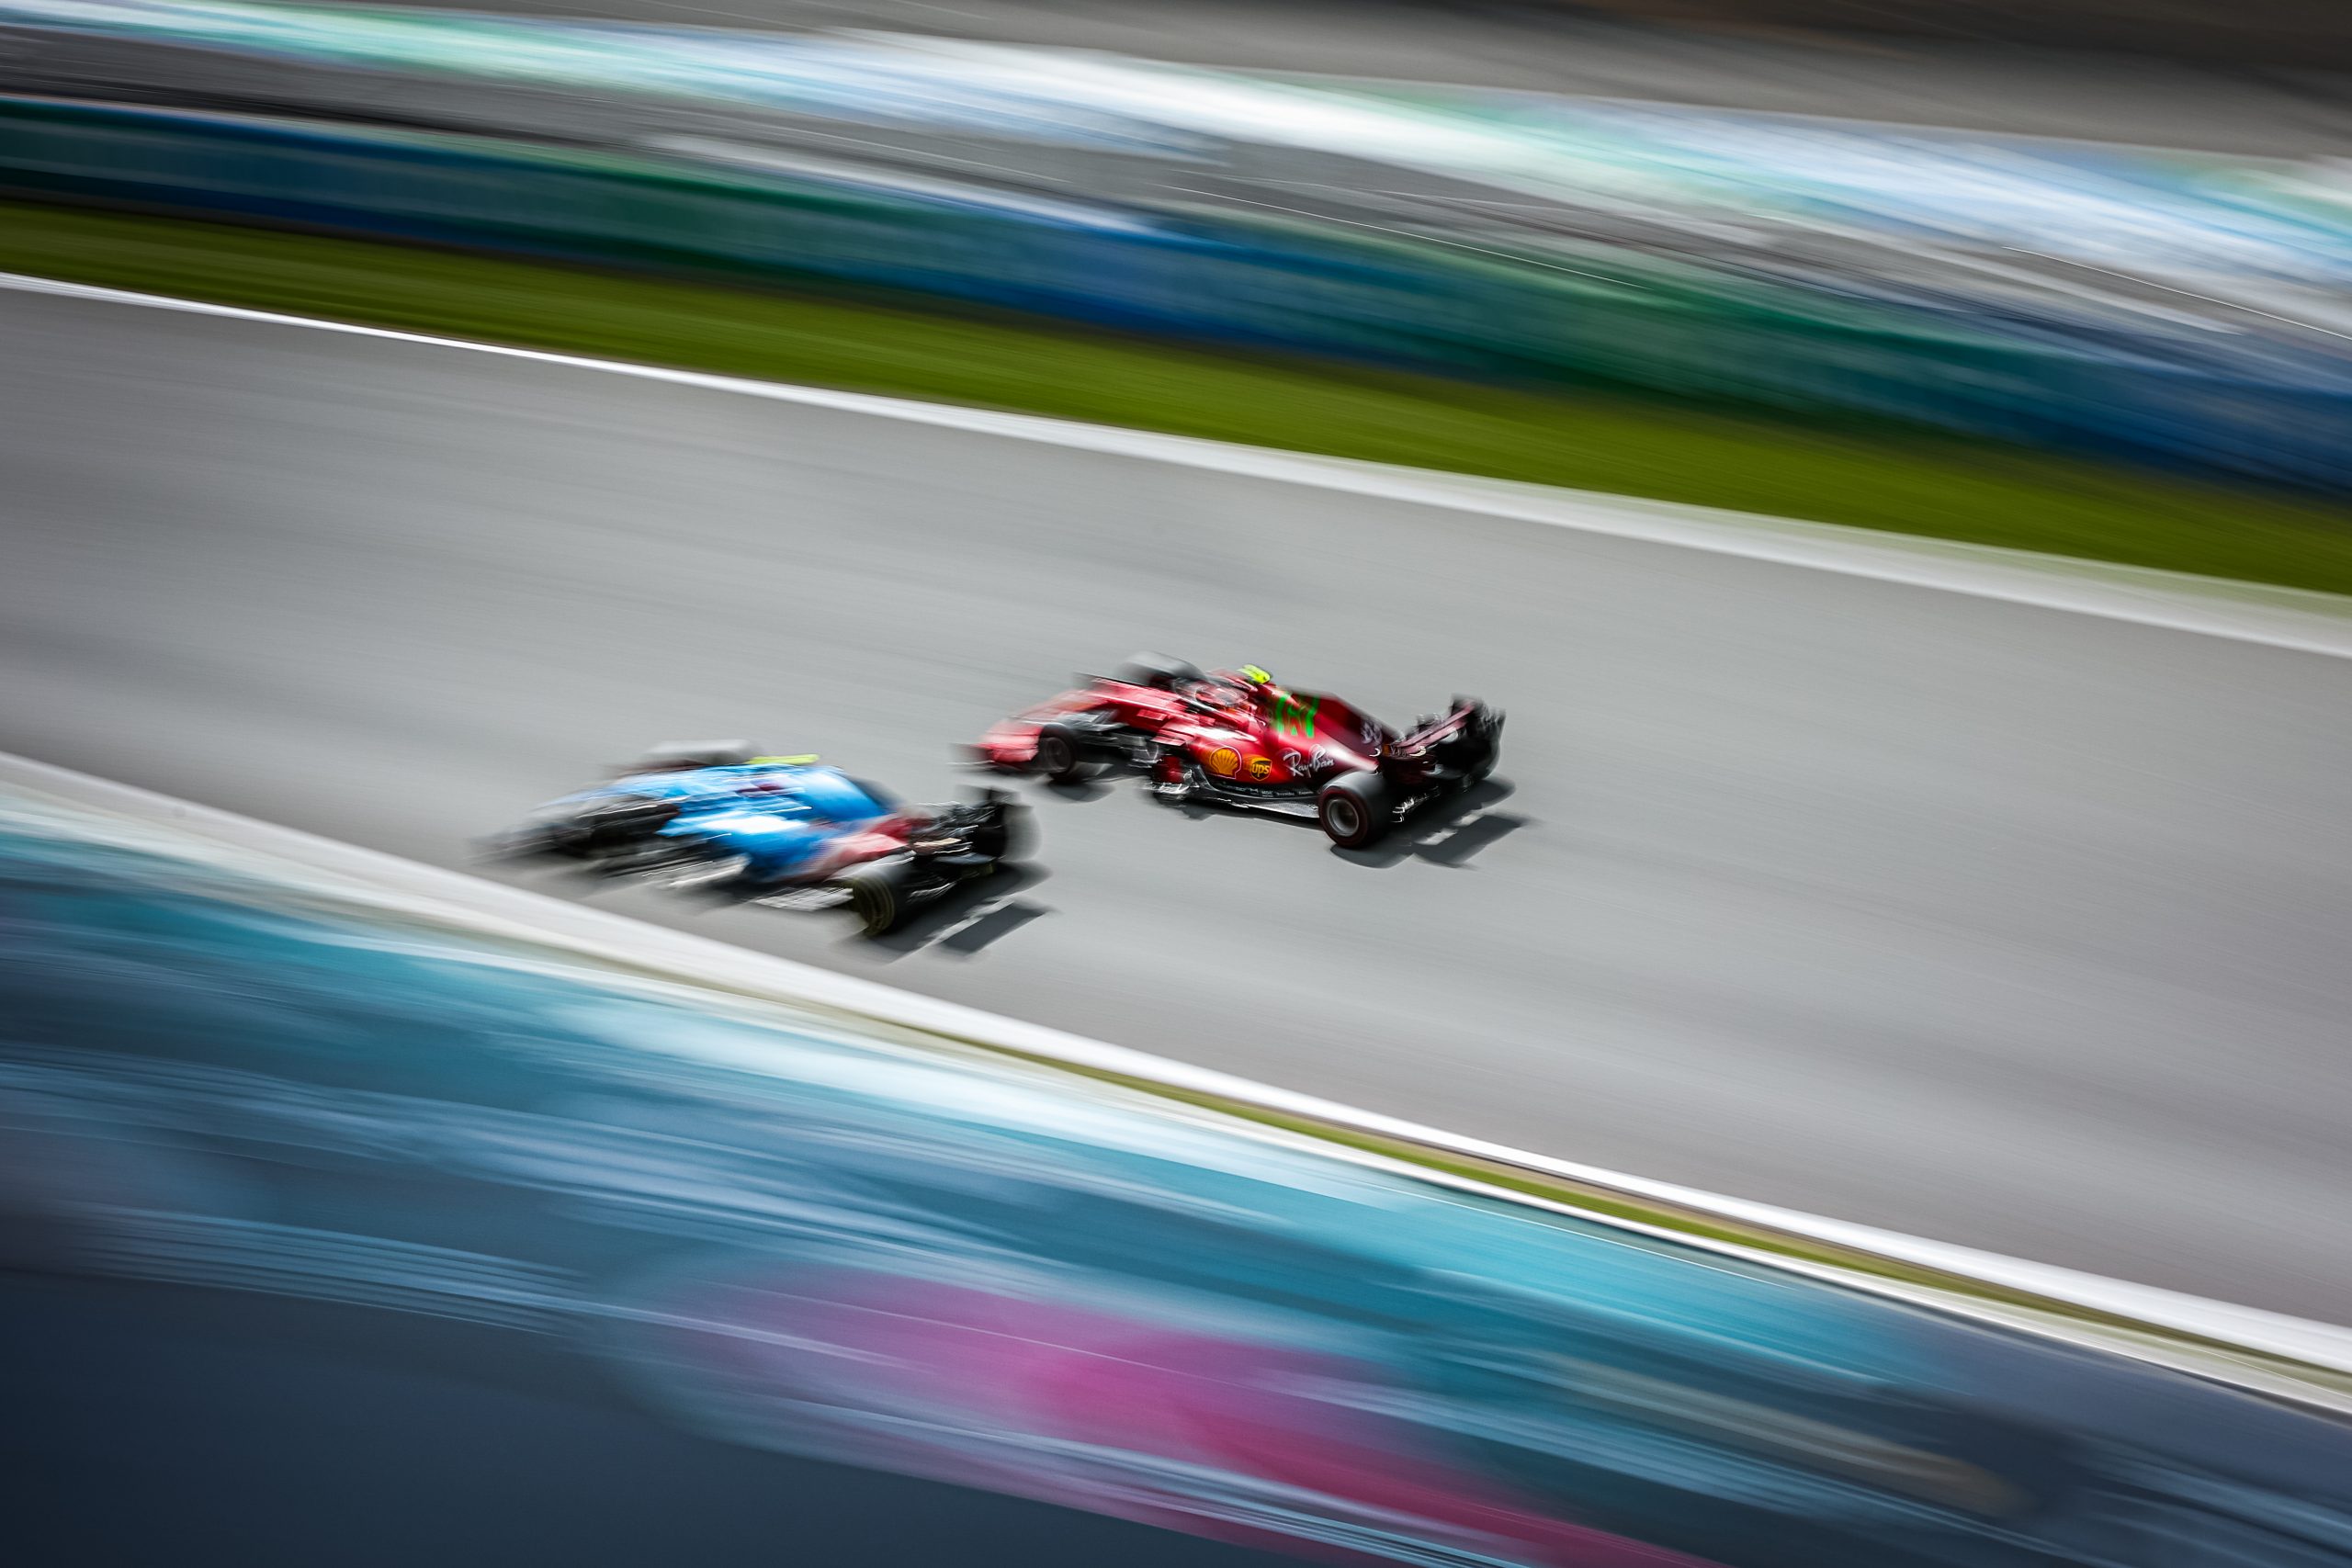 F1 – SPANISH GRAND PRIX 2021 – RACE